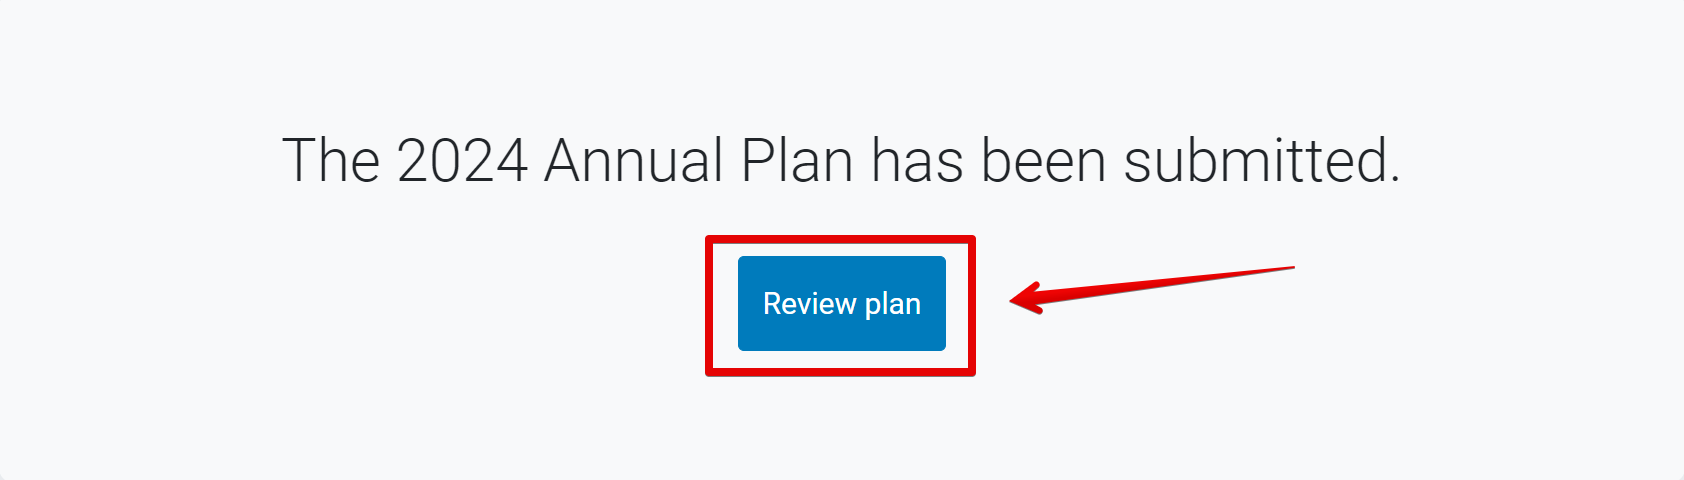 Review Plan Button